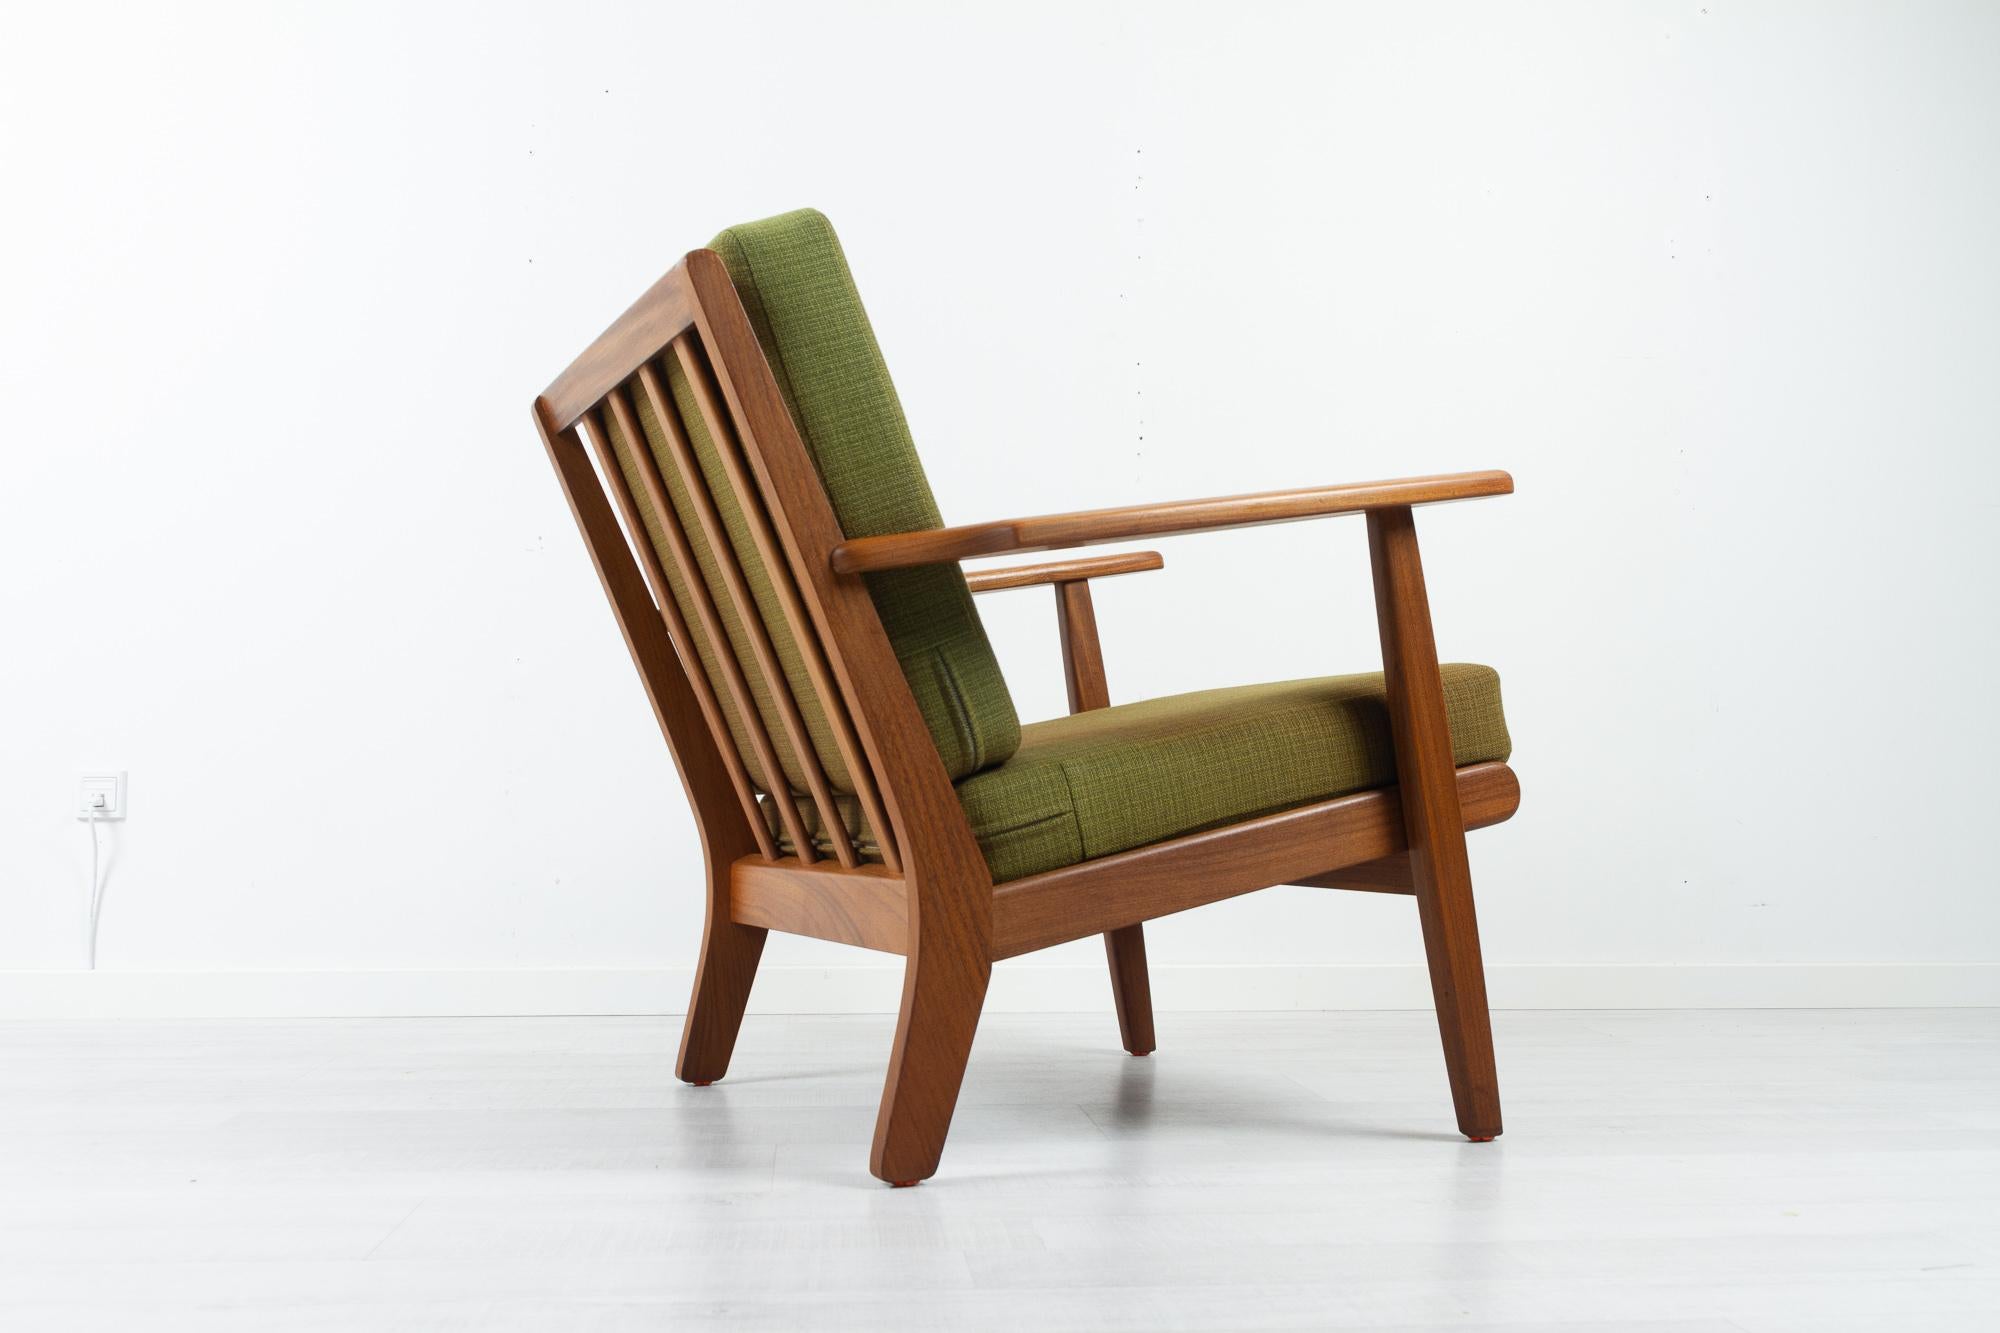 Dänischer Sessel GE-88 von Aage Pedersen für GETAMA Dänemark 1960er Jahre.
Moderner dänischer Loungesessel, Modell GE88, entworfen vom Inhaber der Möbelfabrik GETAMA, Aage Pedersen. 
Dieser Sessel ist aus massivem Teakholz gefertigt und mit